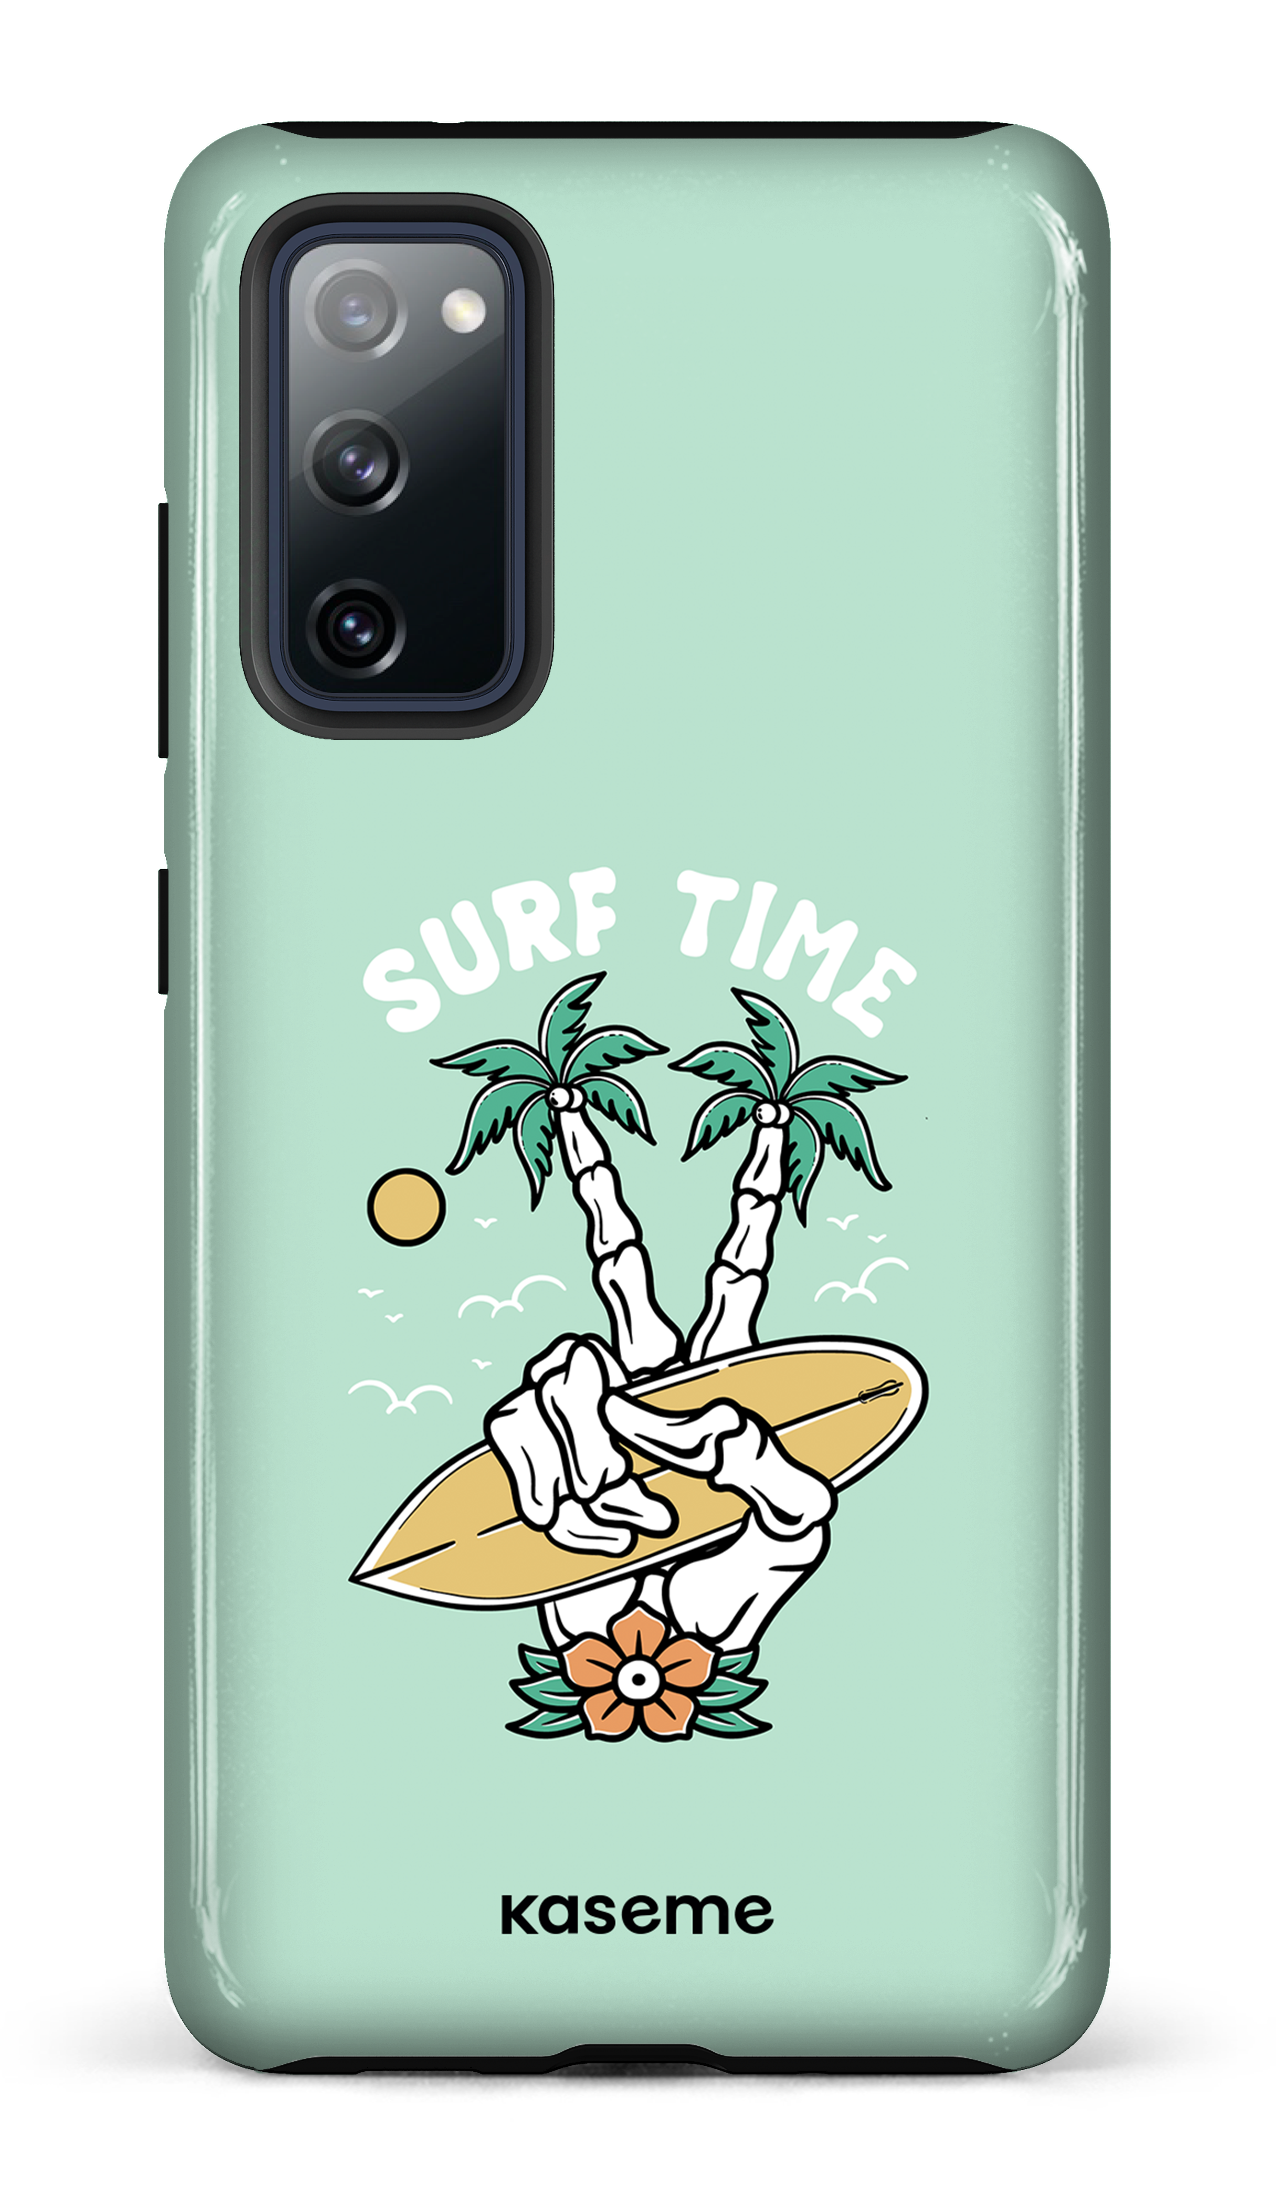 Surfboard - Galaxy S20 FE